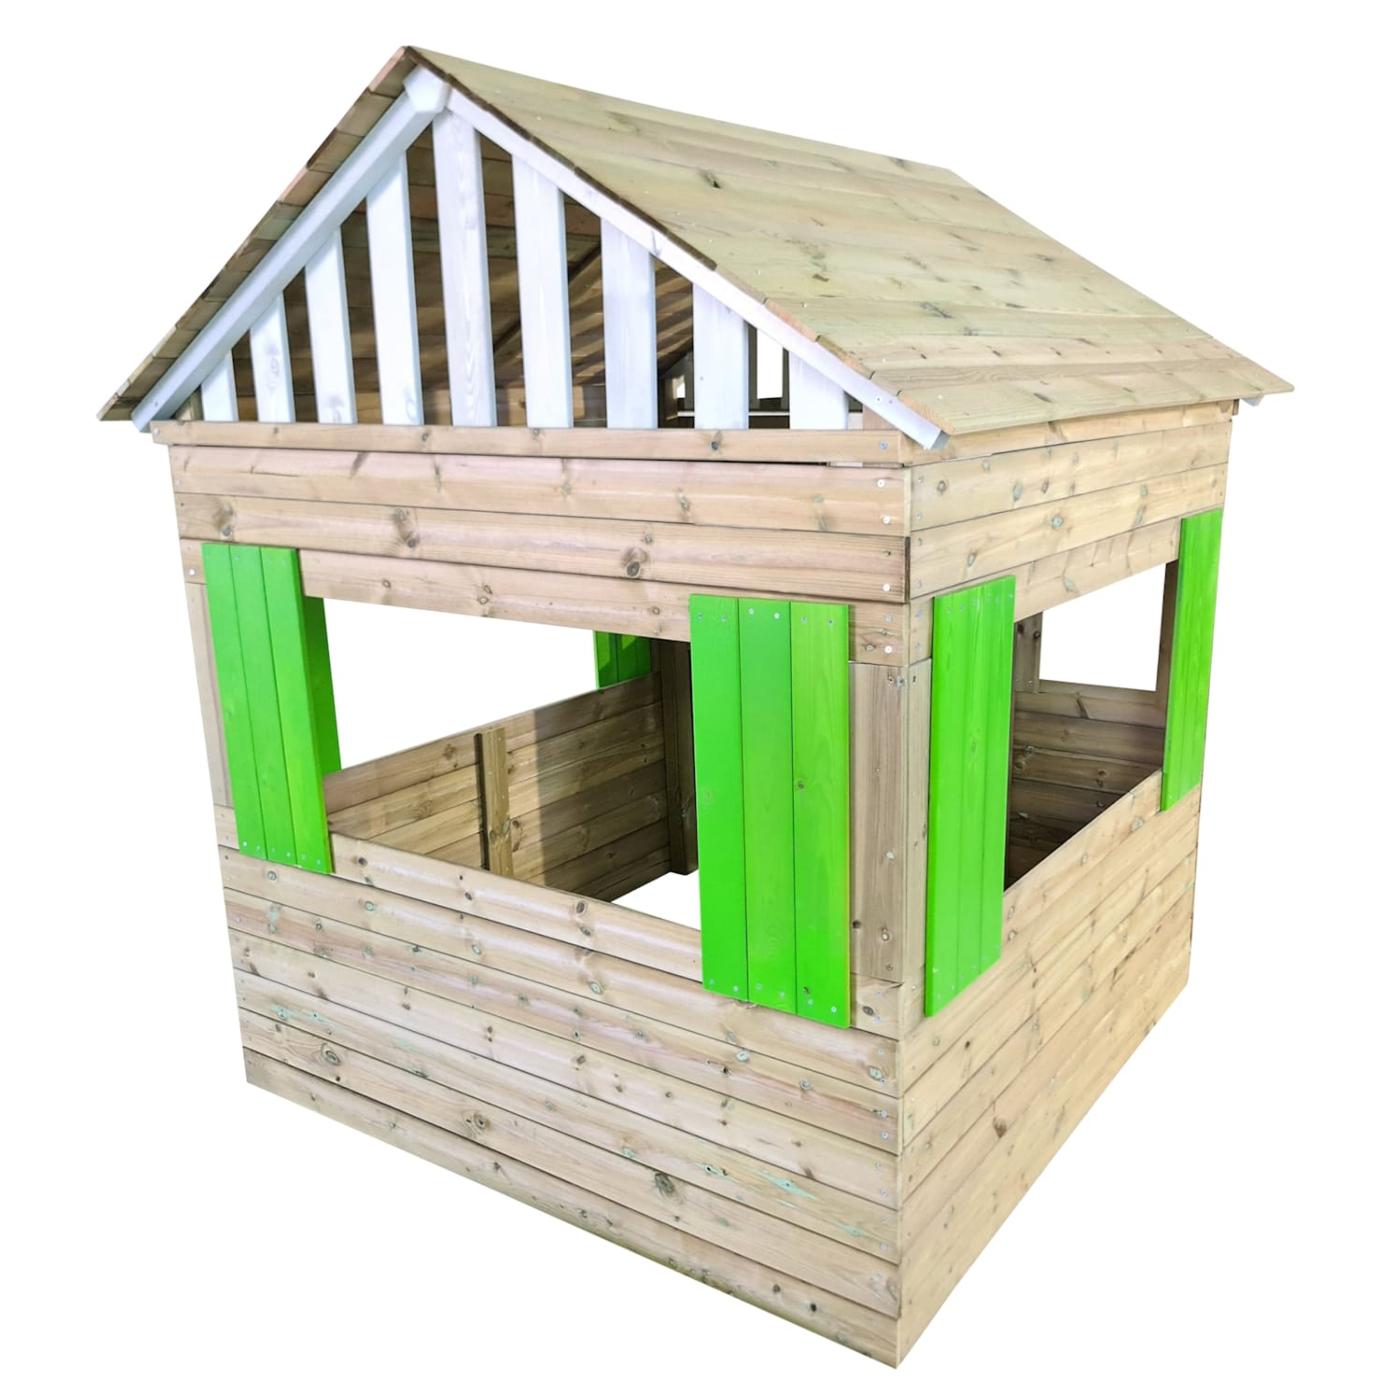 Casa de brincar de madeira para crianças com cozinha, aprovada MASGAMES LOLLIPOP XXL HORECA